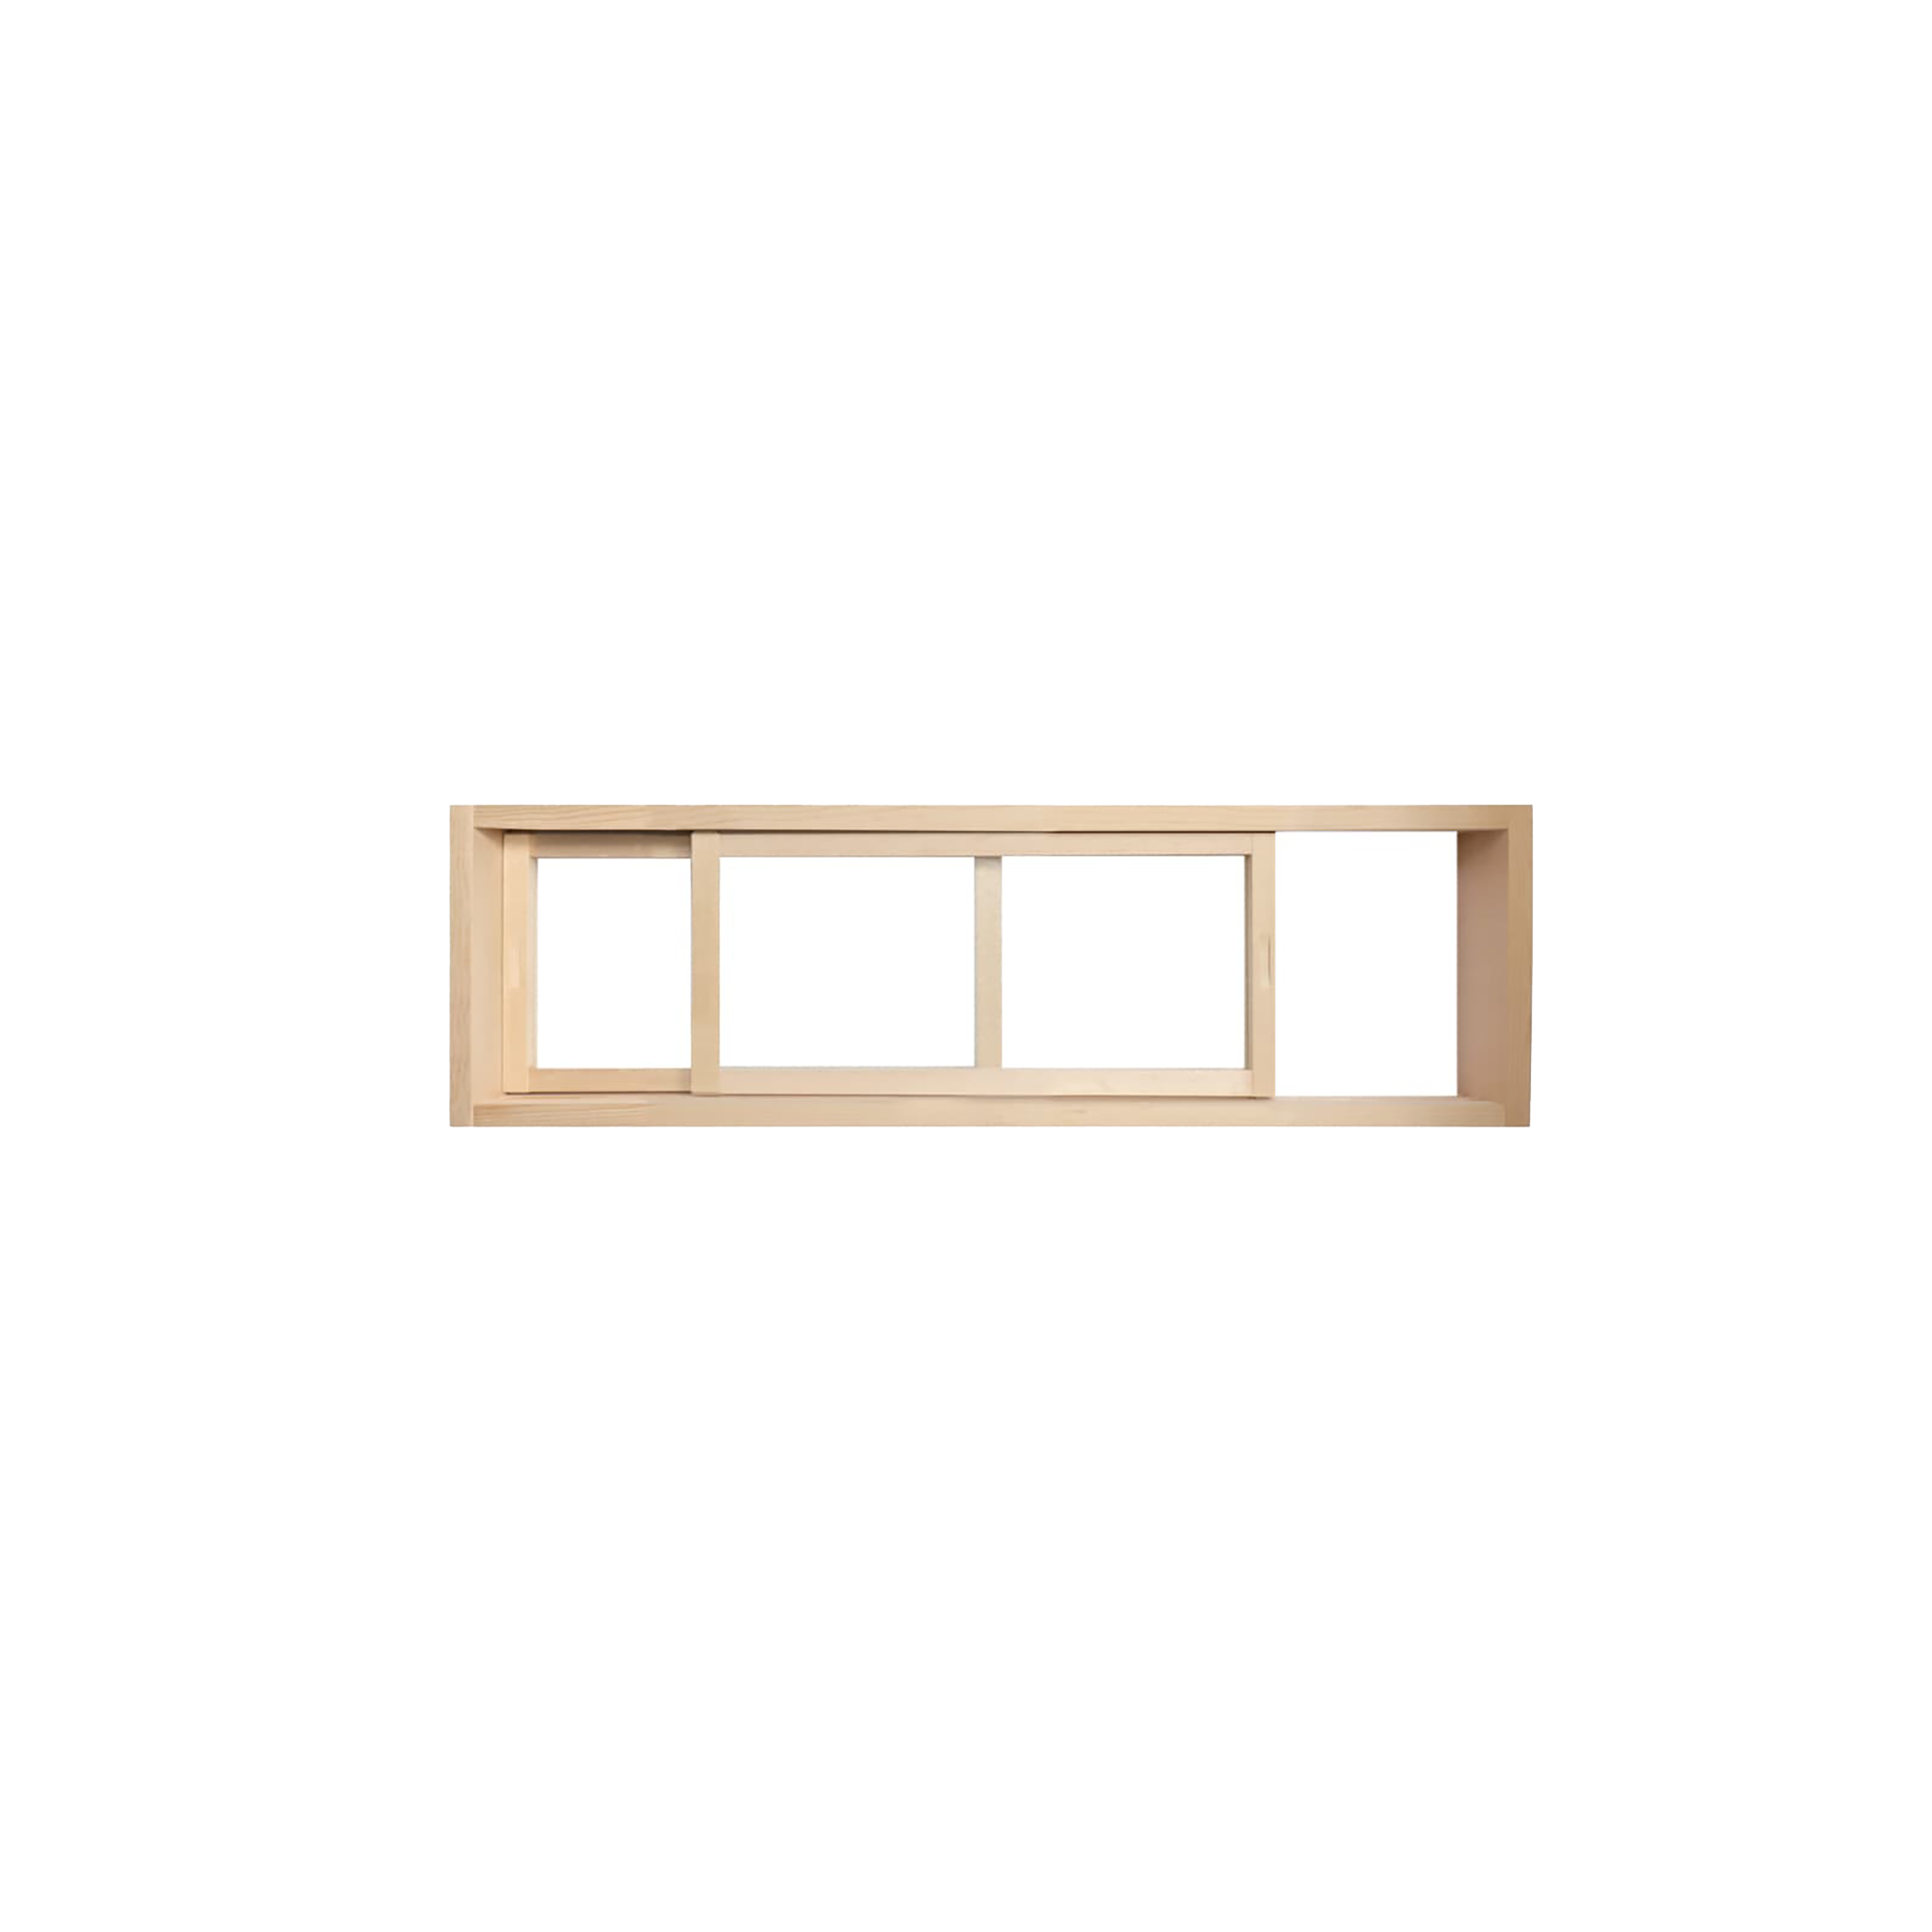 木製室内窓 横長引き違いタイプ サイズオーダー